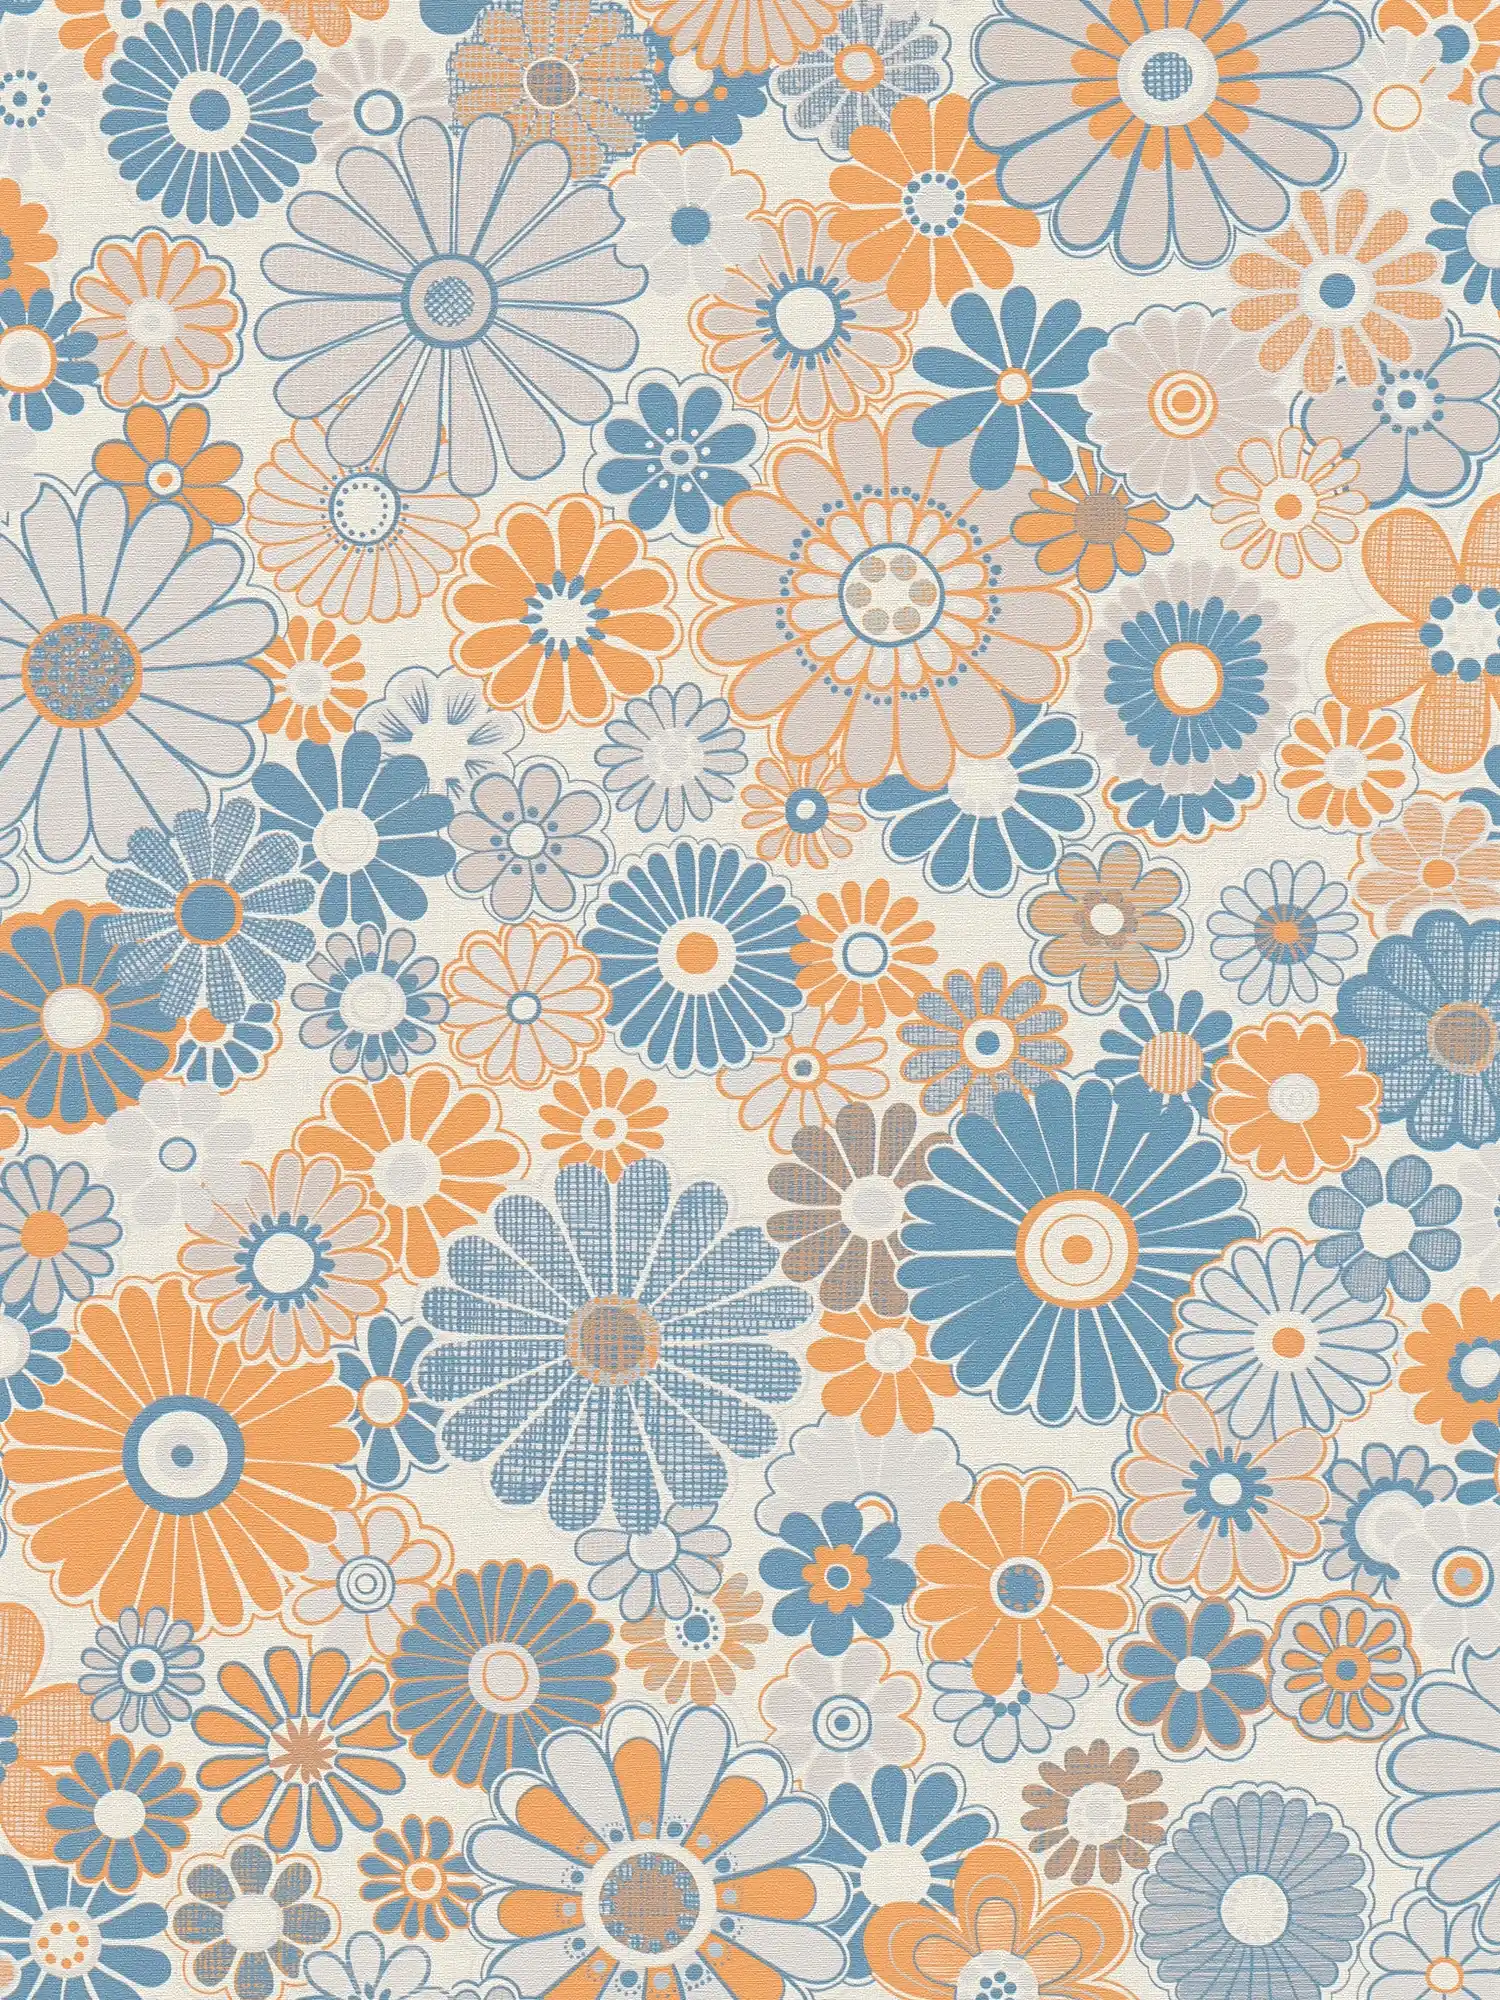 Vliesbehang met bloemenpatroon in retrostijl - blauw, oranje, grijs
